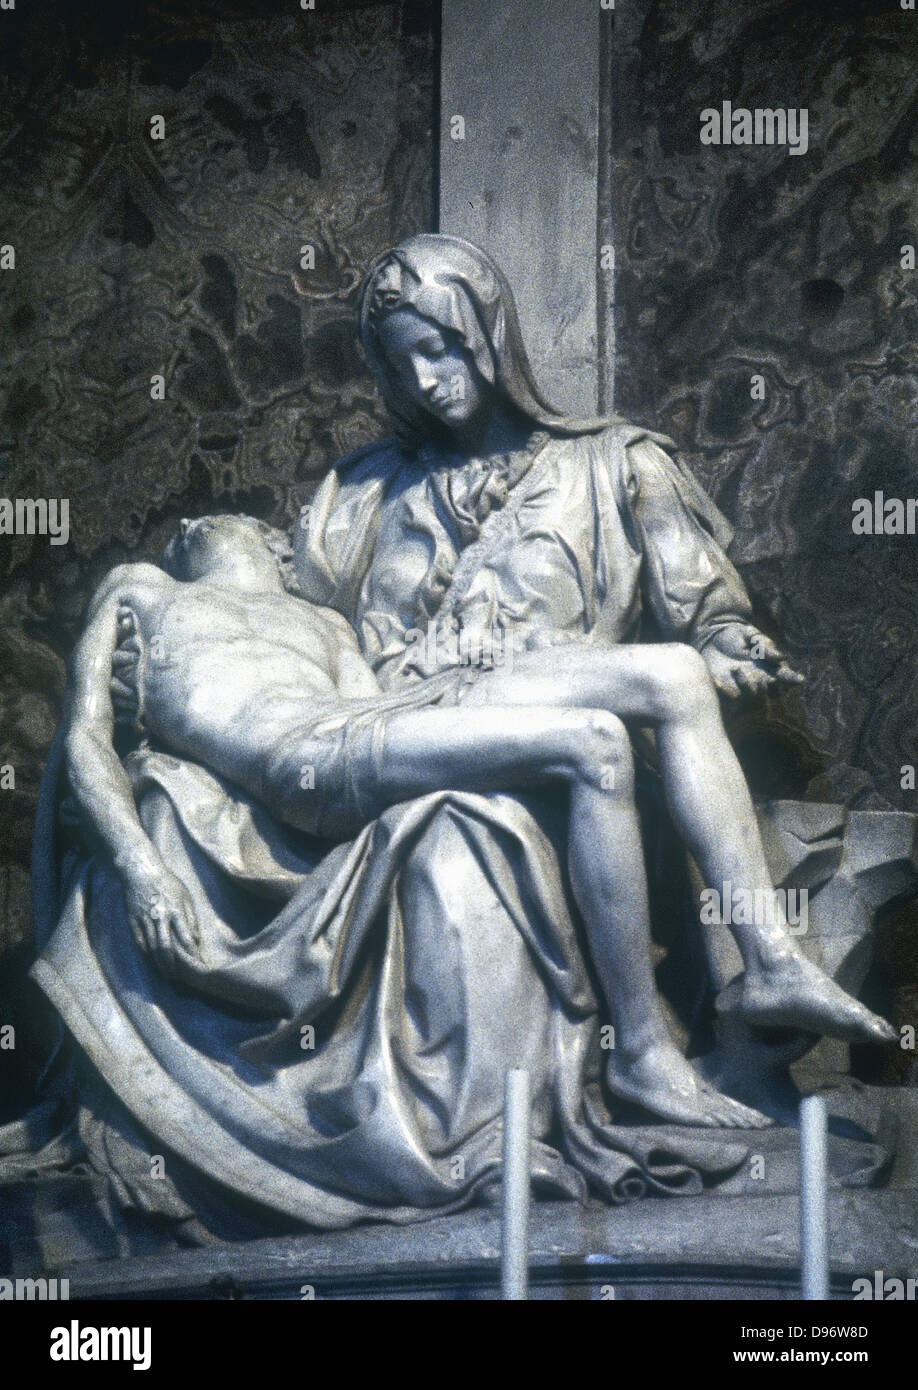 Pieta' (1498-1500). Michelangelo (1475-1564): scultura in marmo. San Pietro, Roma. Foto Stock